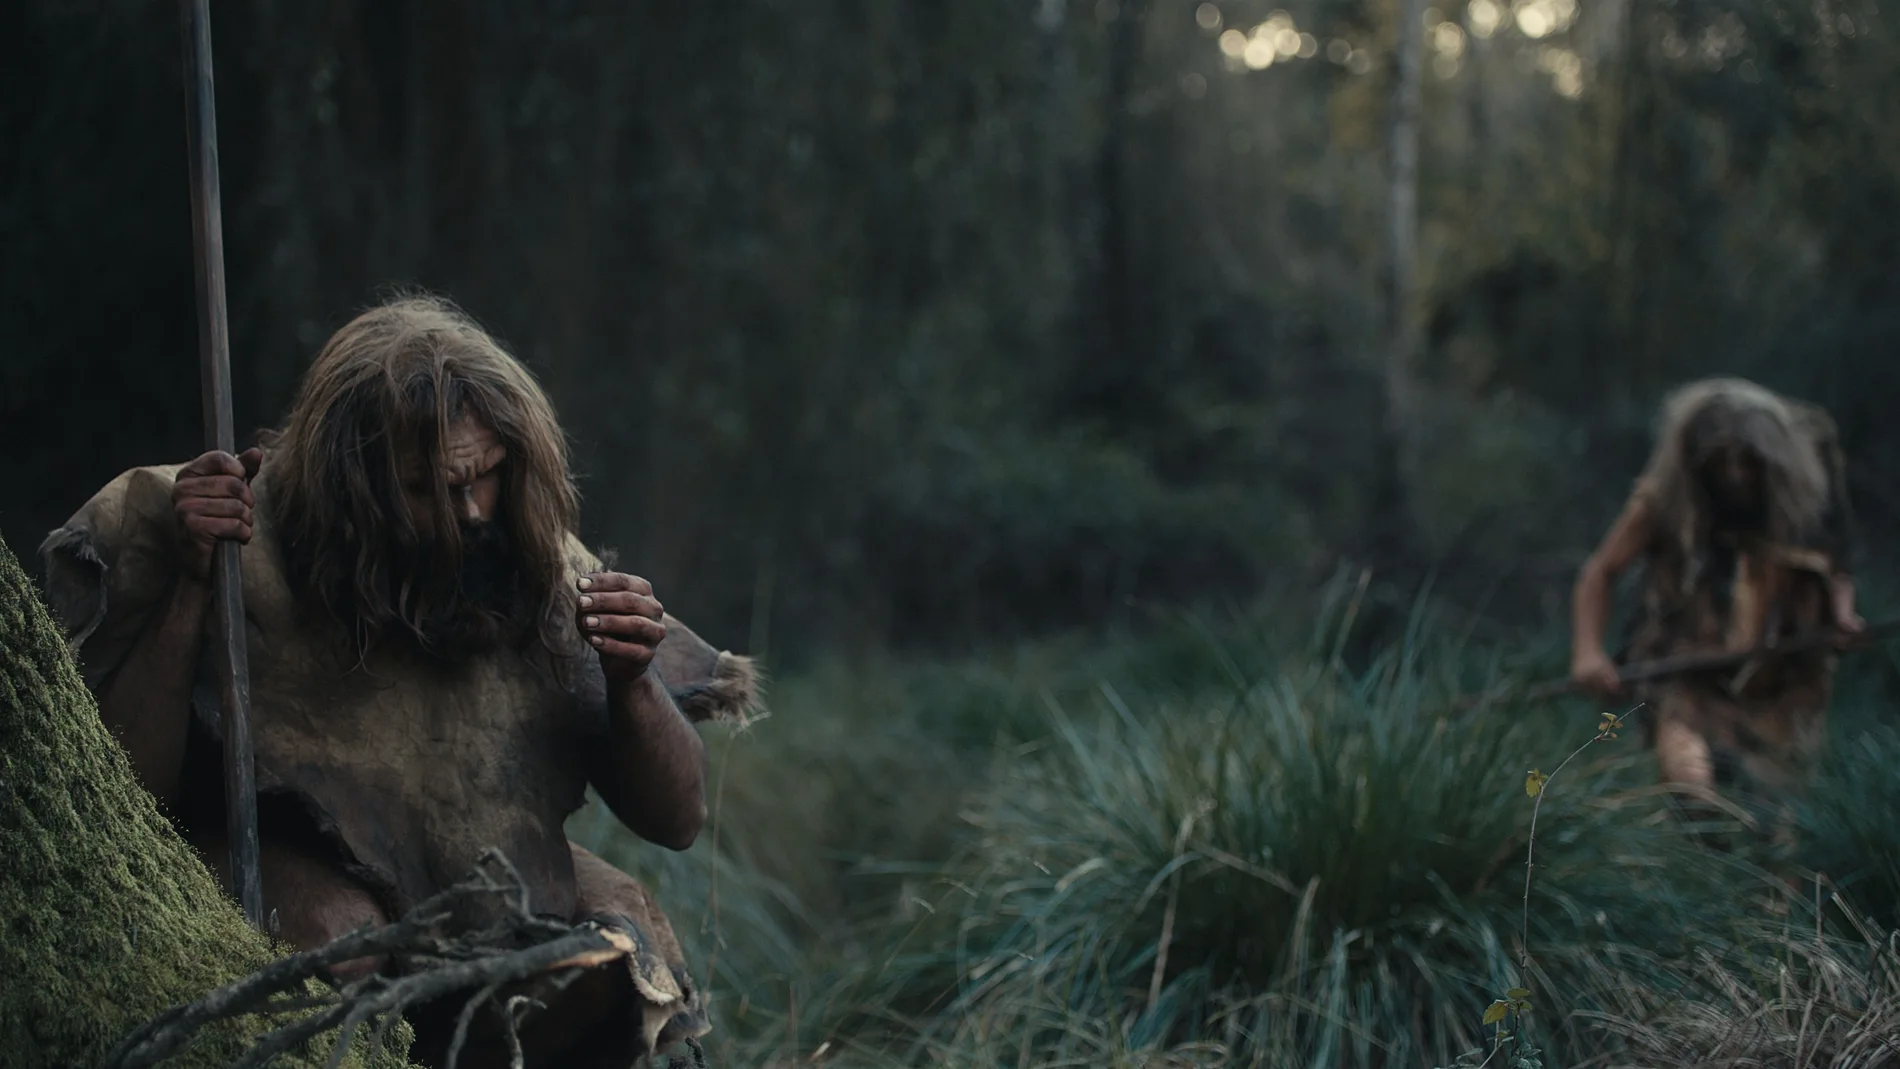 Fotograma del documental "Las últimas huellas del neandertal"